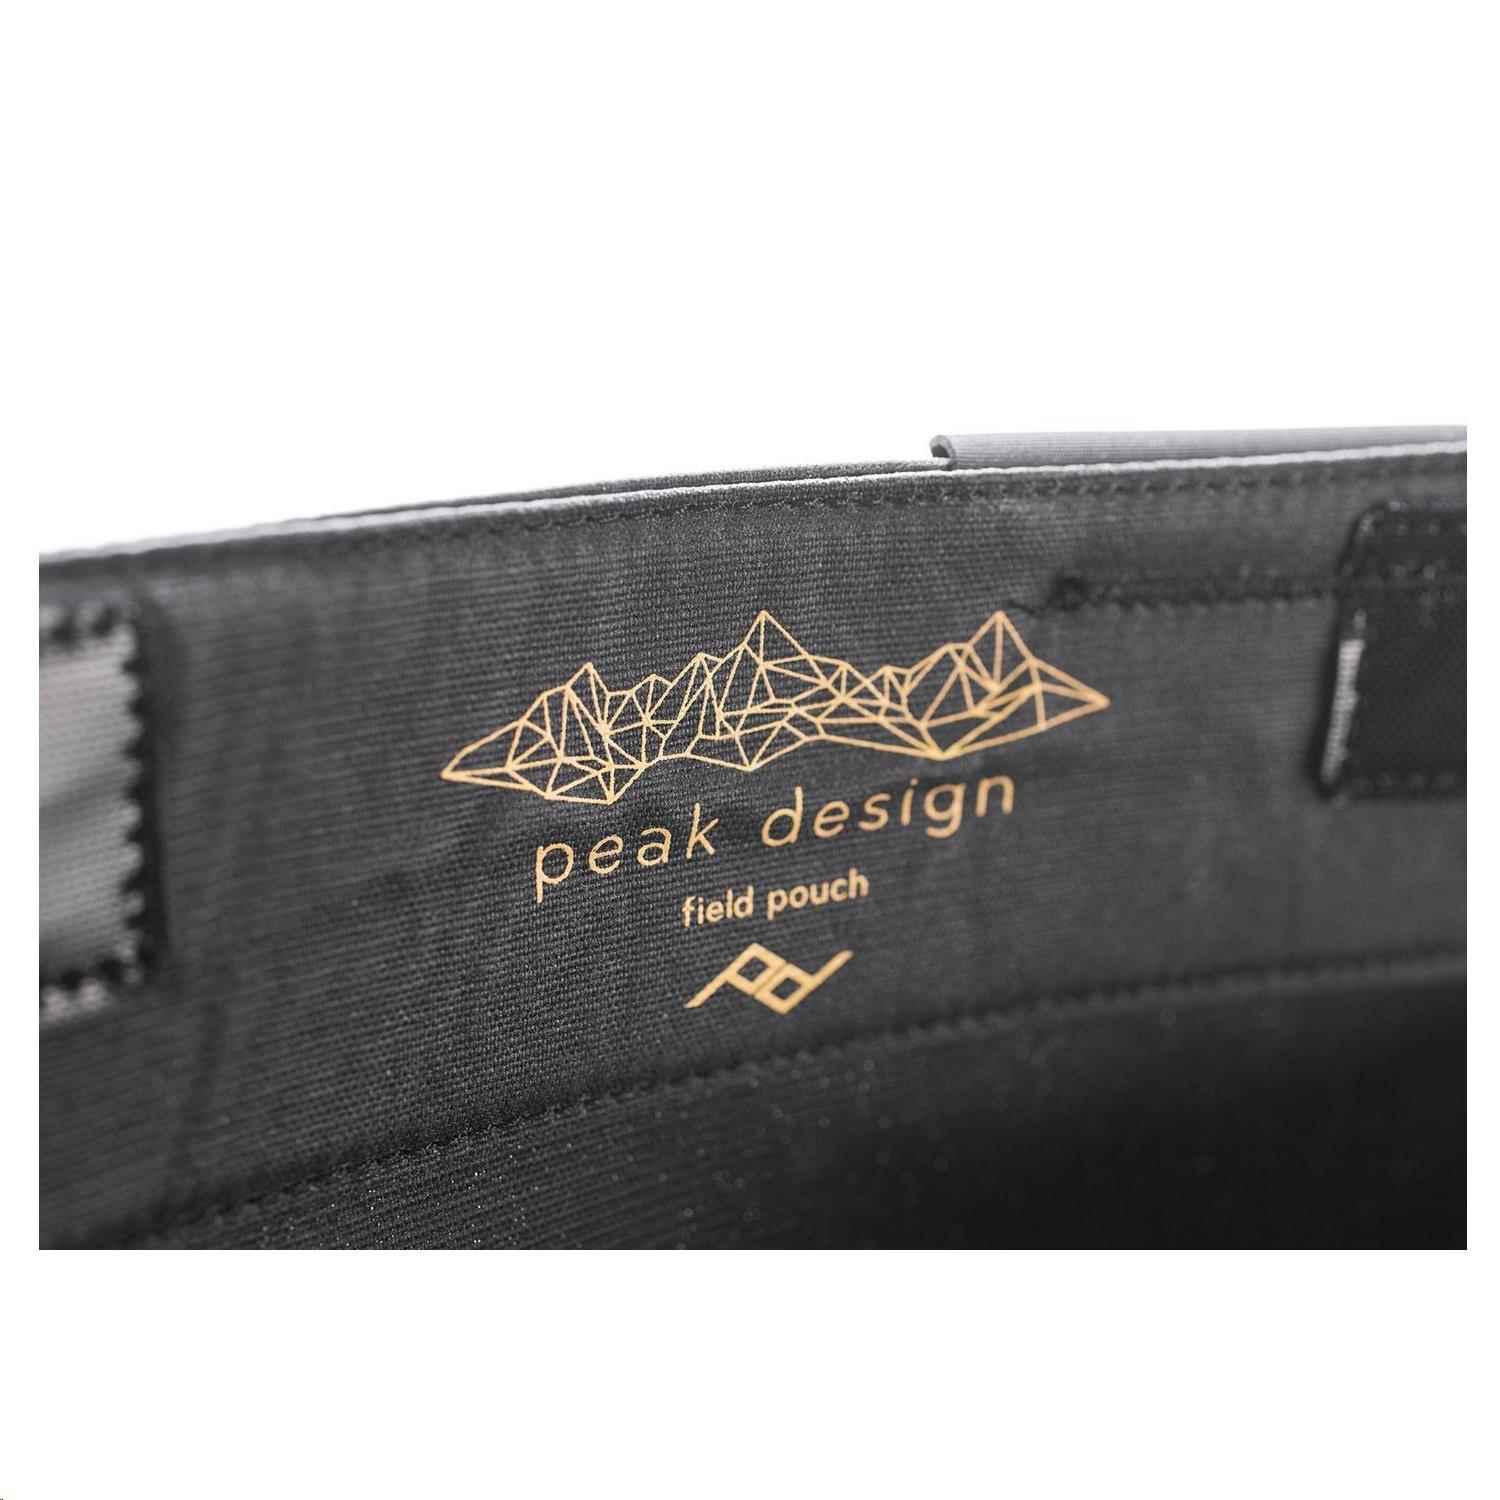 Peak Design Field Pouch - kapsa černá (Black)4 